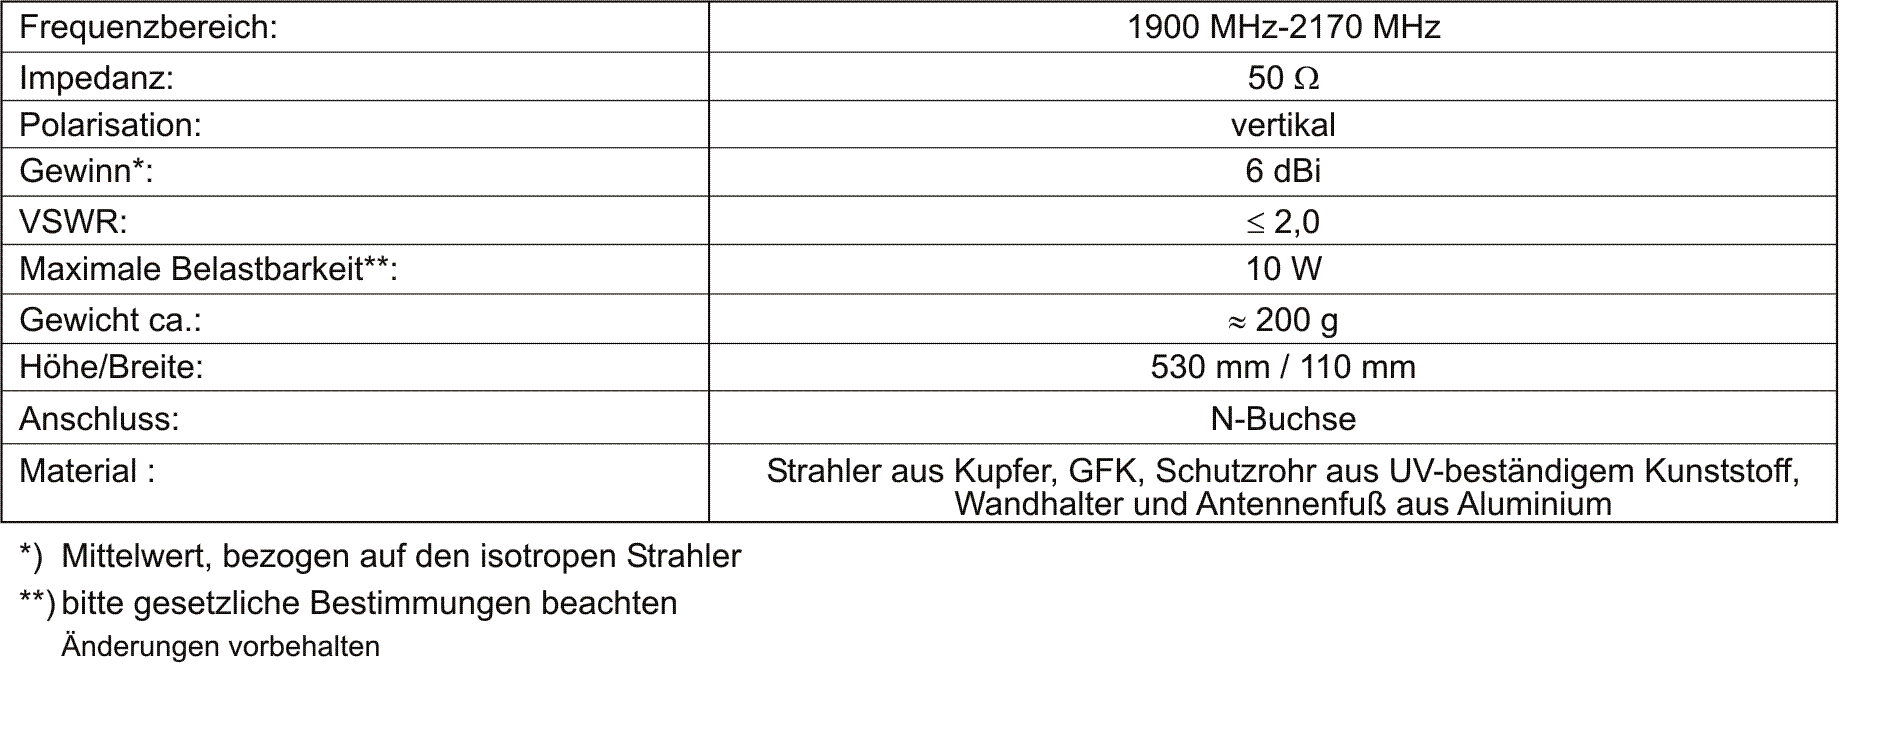 Technische Daten der STS 2000 Rundstrahl-Antenne